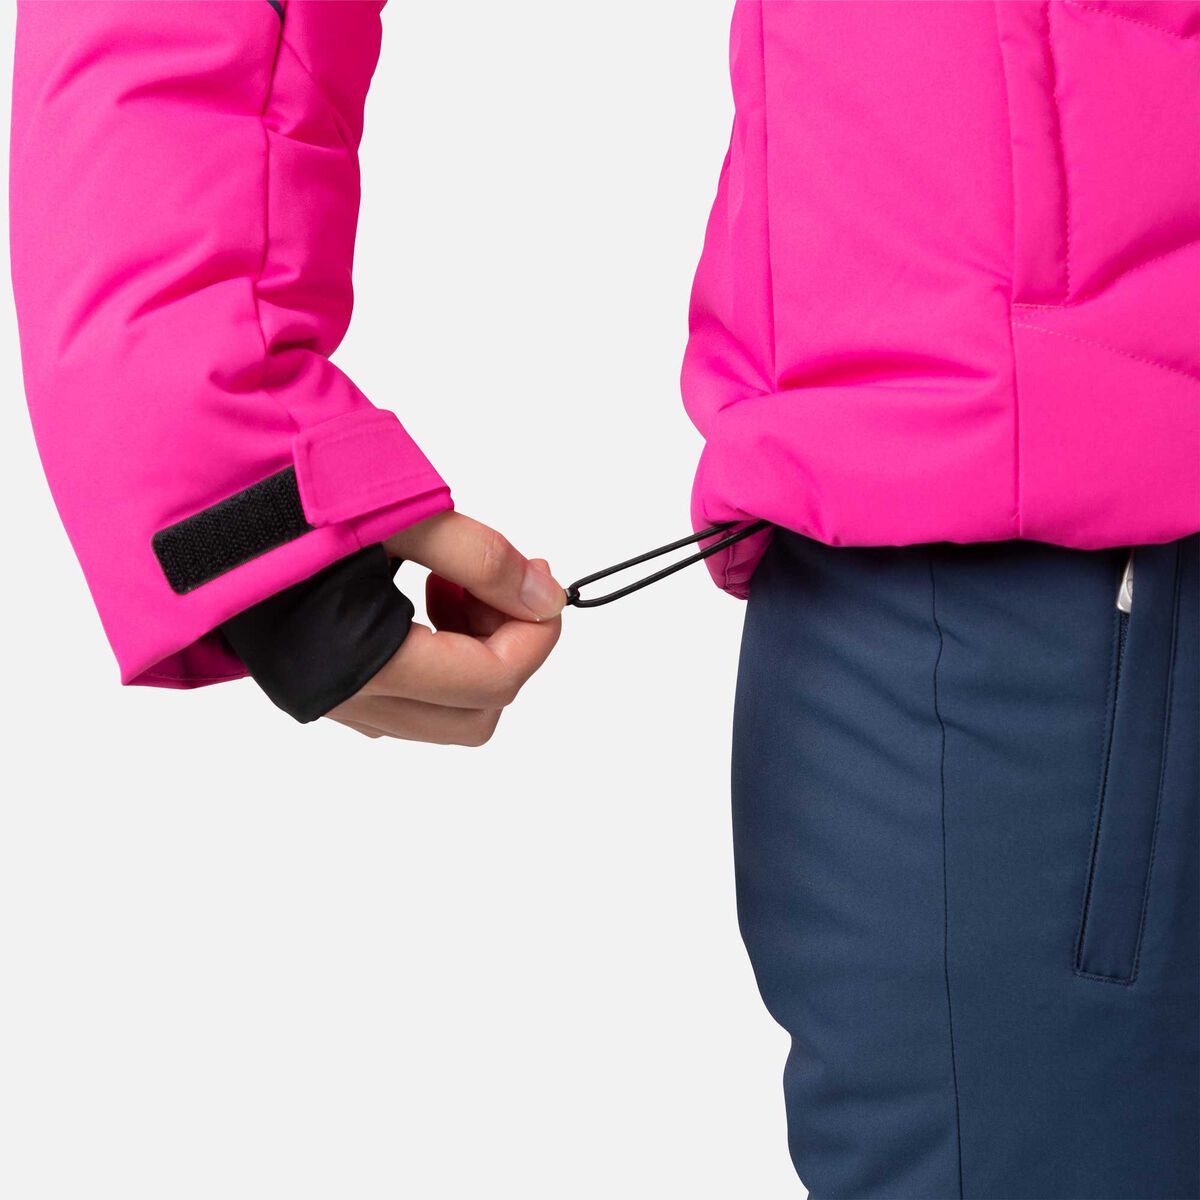 Women's Staci Ski Jacket